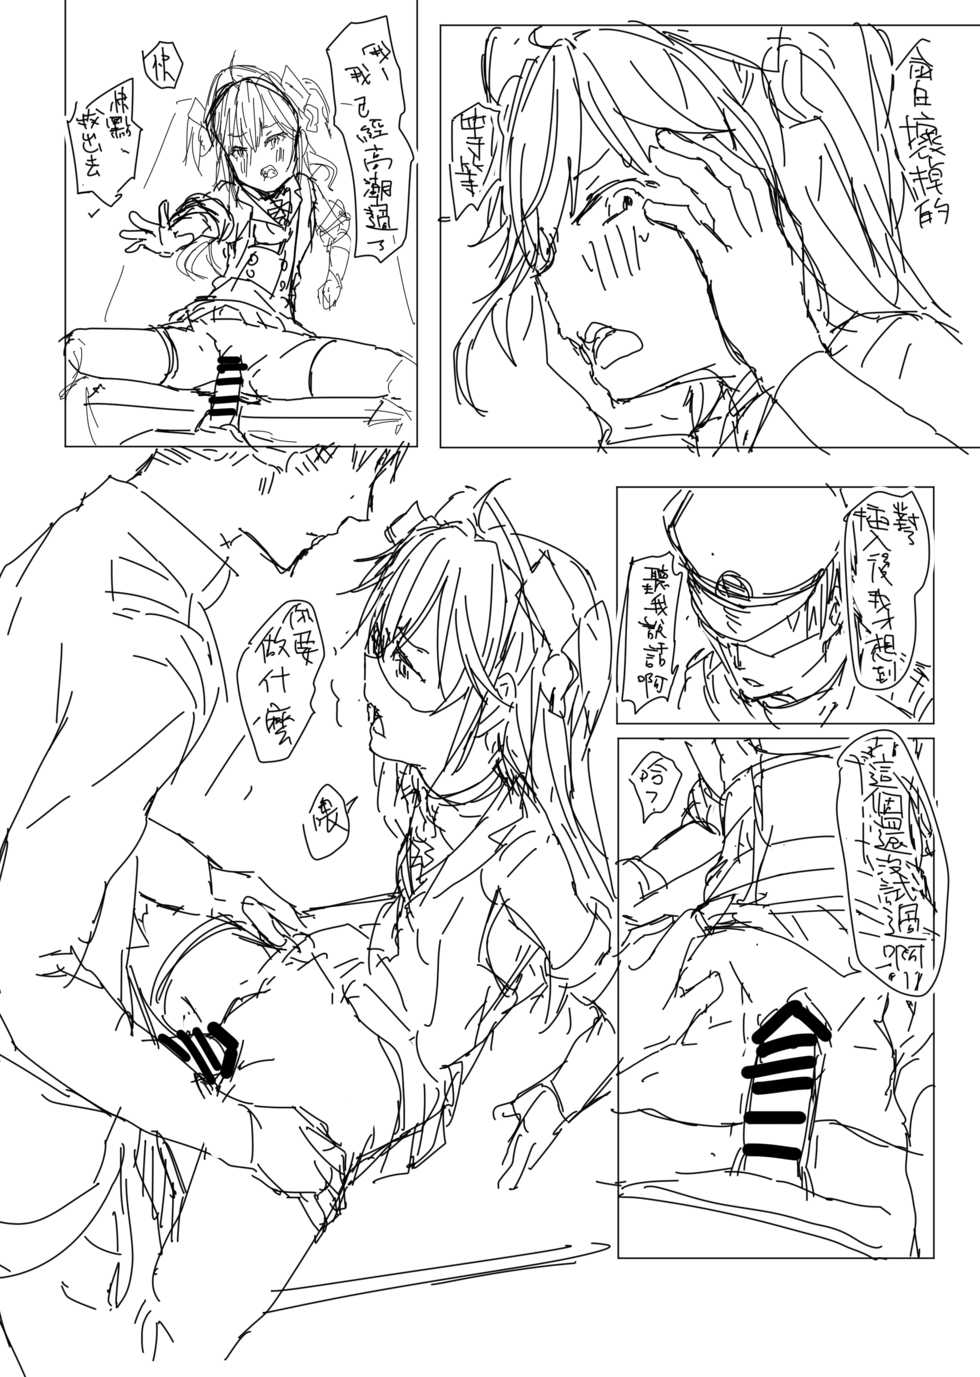 [013] Hipper Rakugaki Manga (Azur Lane) - Page 25